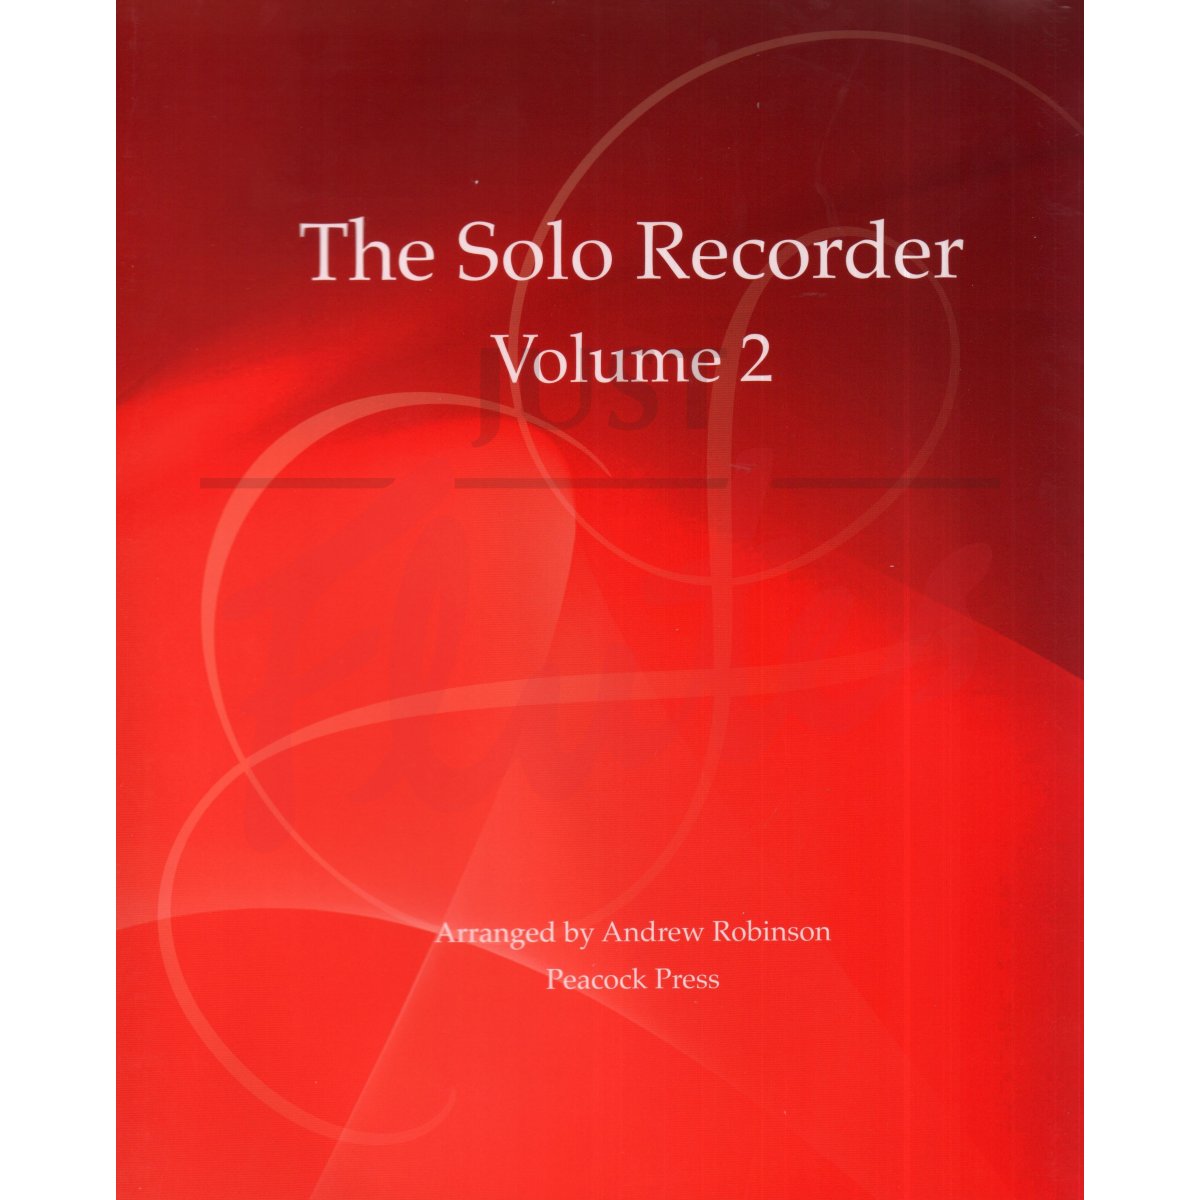 The Solo Recorder Volume 2